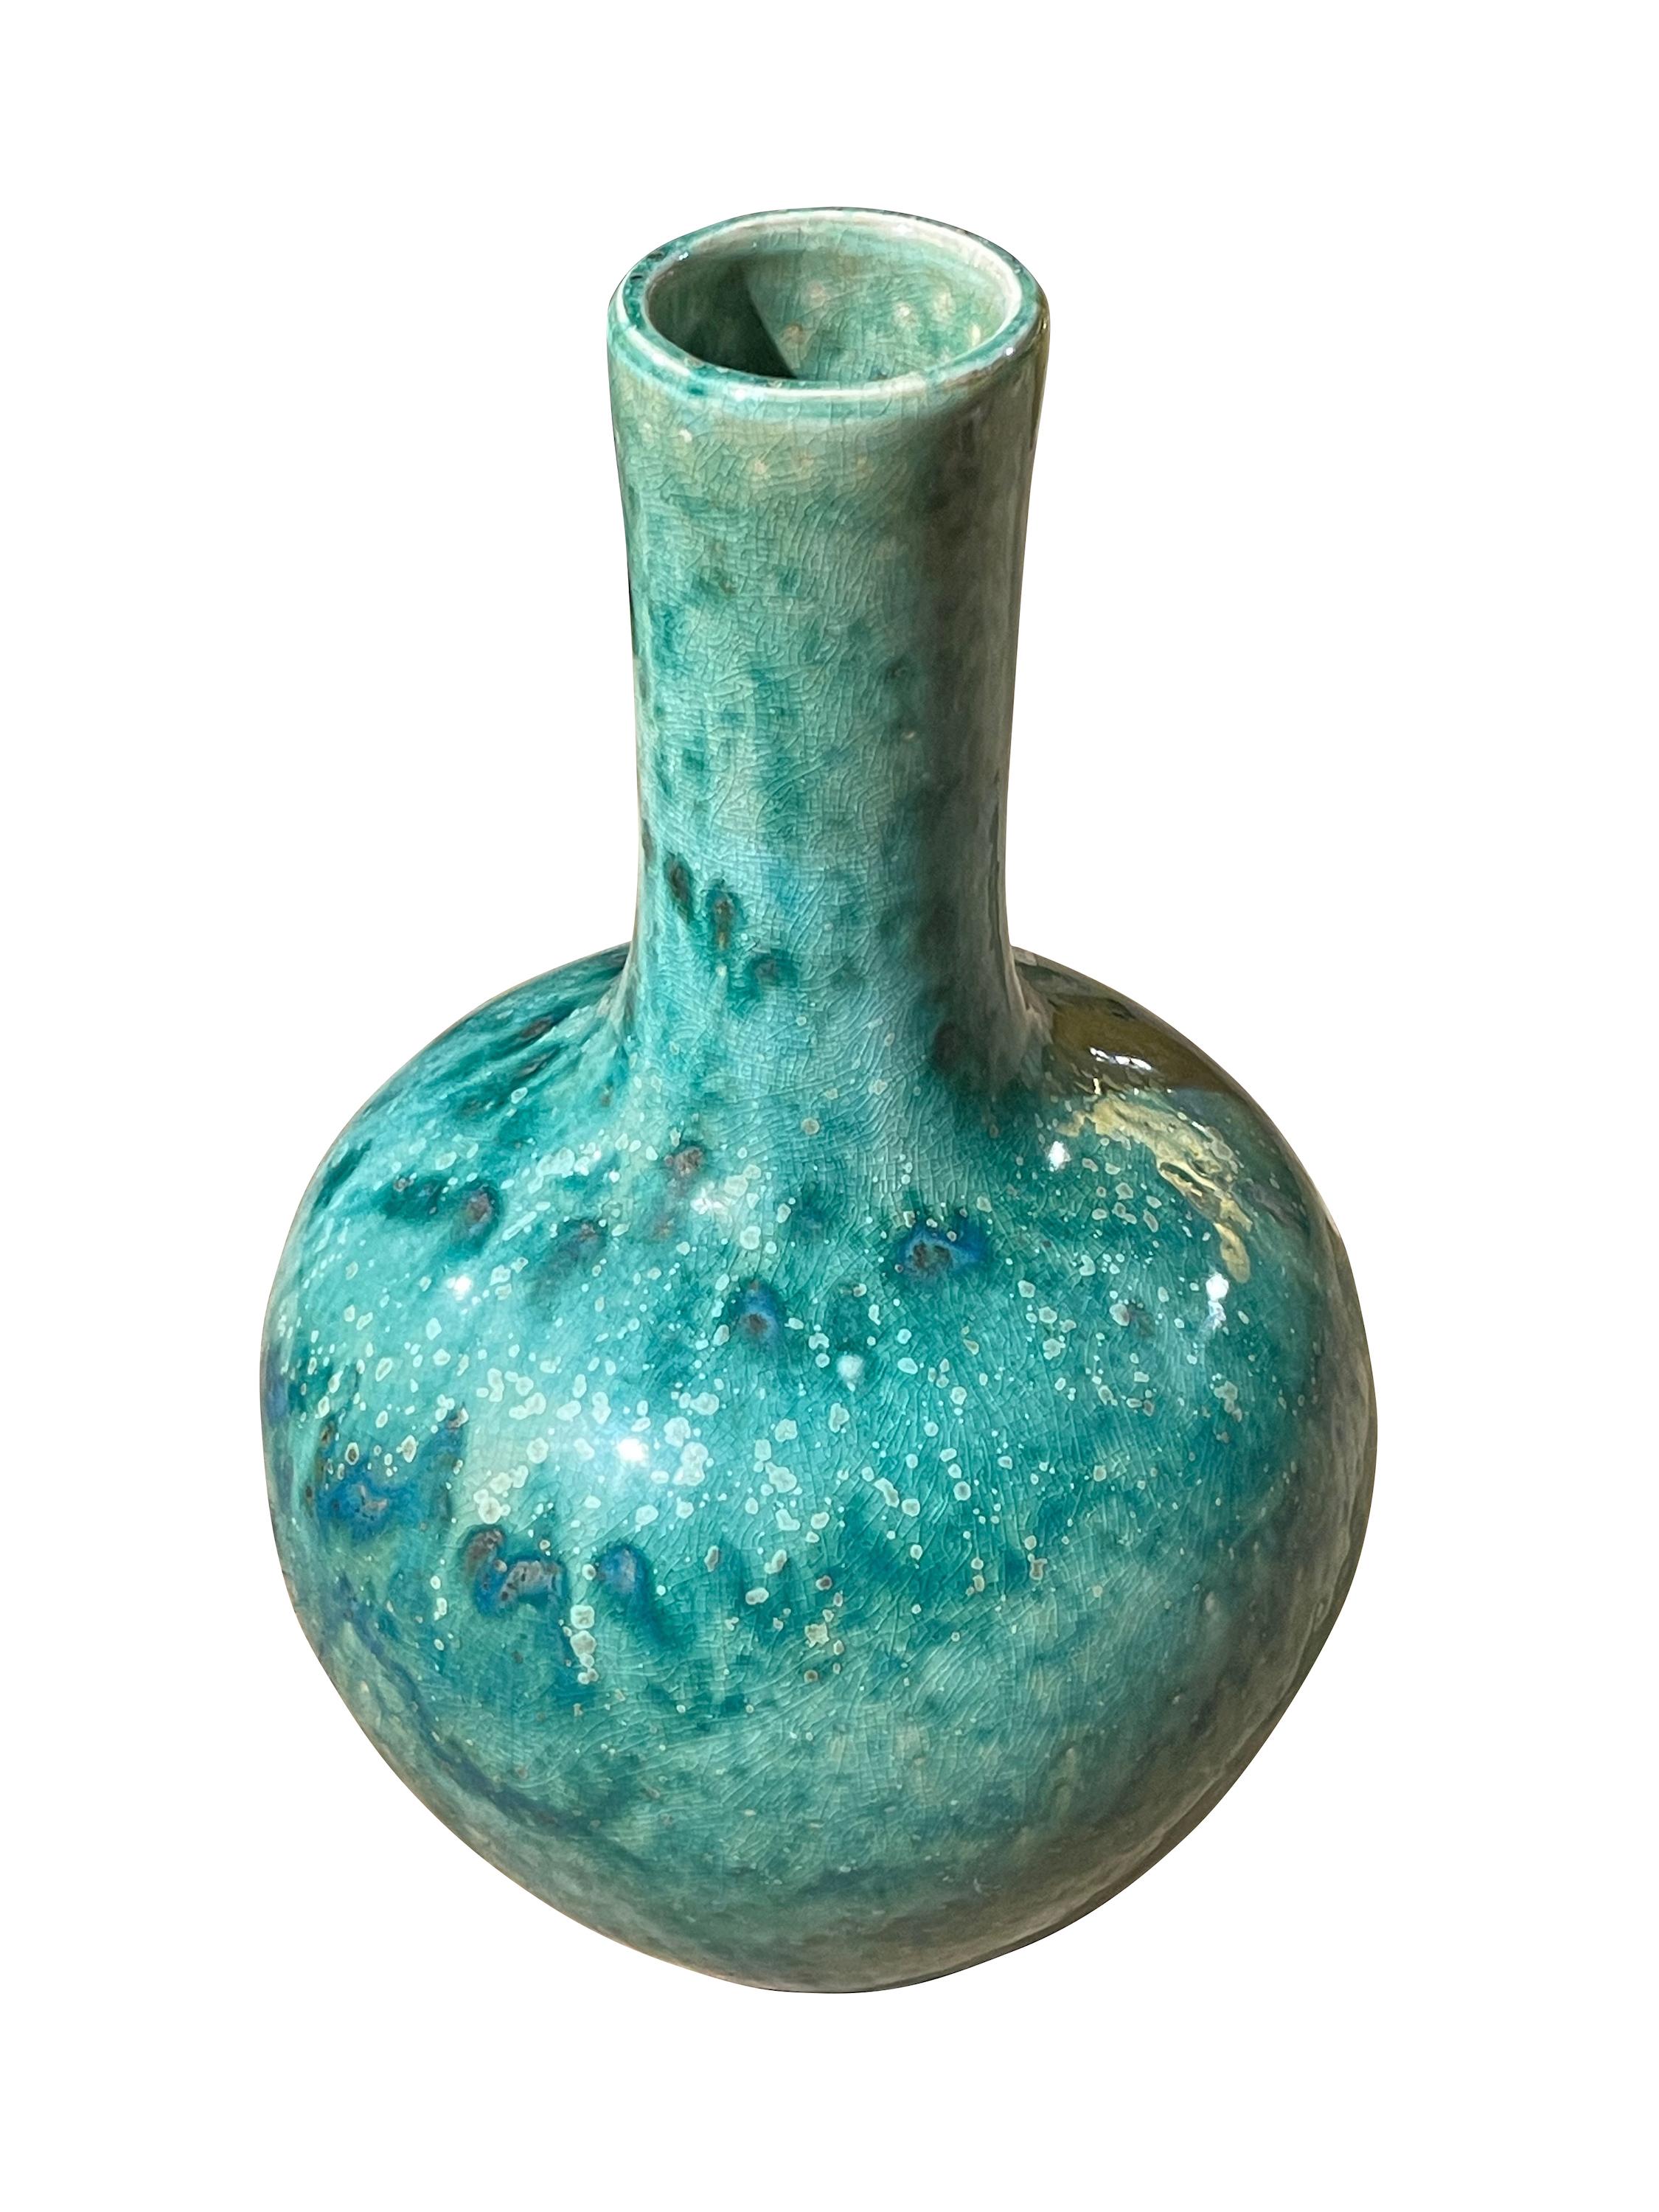 Zeitgenössische chinesische Vase mit gesprenkelter türkiser Färbung und Craquelé-Glasur.
Trichterhals-Design.
Aus einer großen Sammlung von verschiedenen Größen und Formen.
